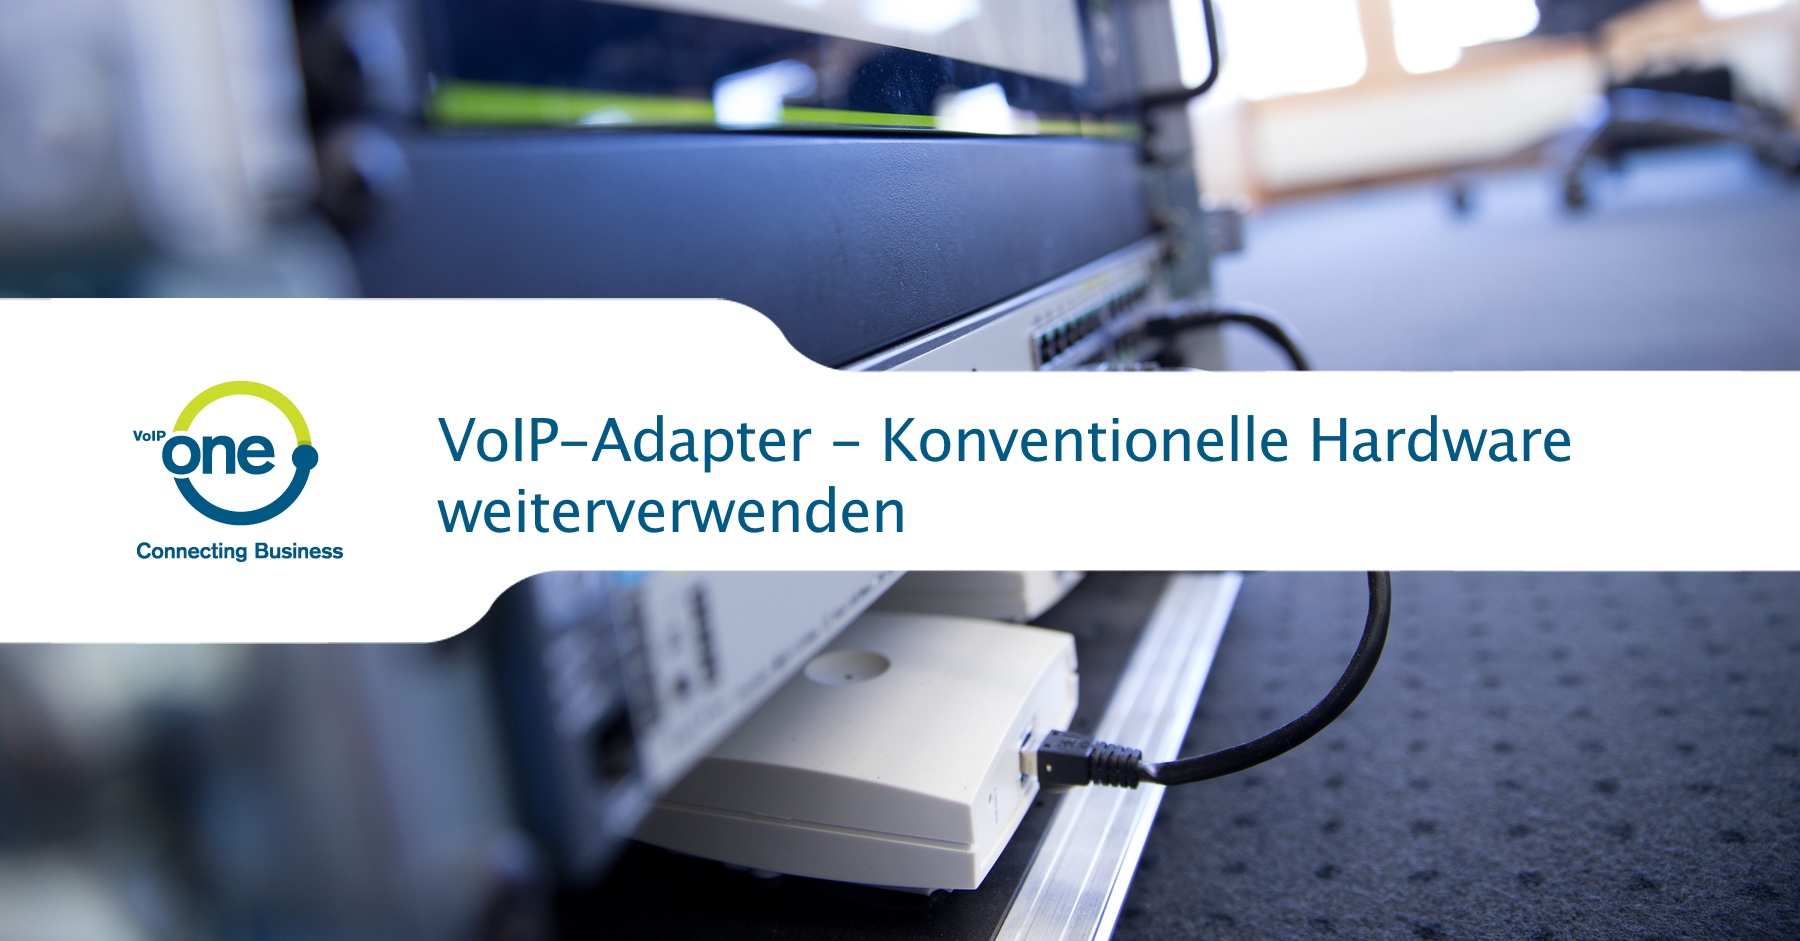 VoIP-Adapter - Konventionelle Hardware weiterverwenden